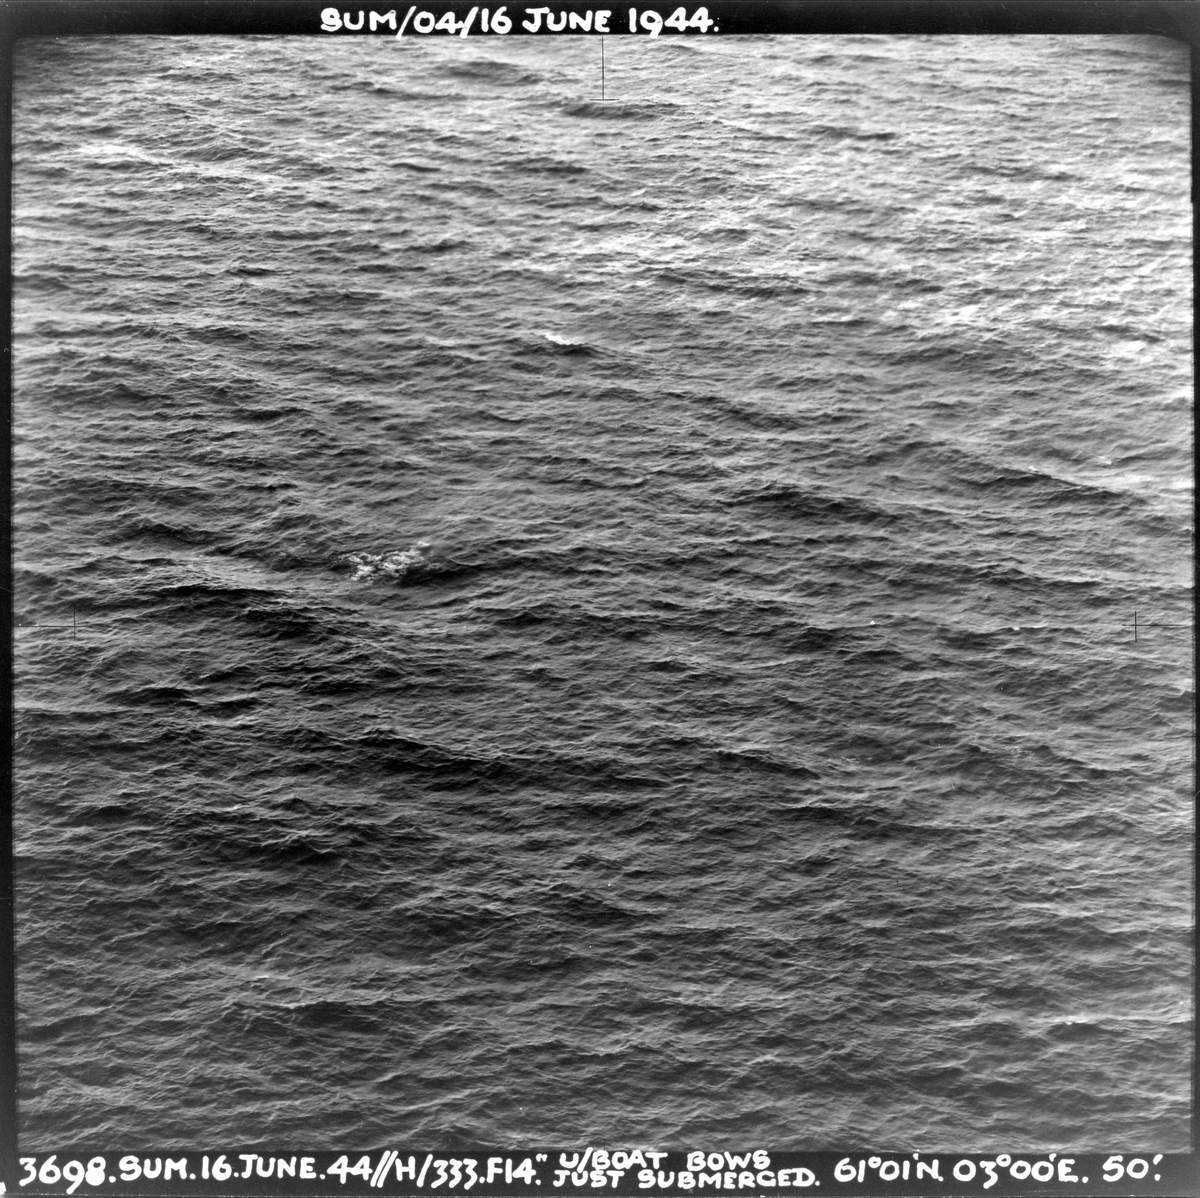 En Mosquito fra 333 skvadronen angriper en tysk ubåt vest for Sognefjorden, 16. juni 1944. Pilot på flyet er major E. U. Johansen. Ubåtens baug har nettopp gått ned.